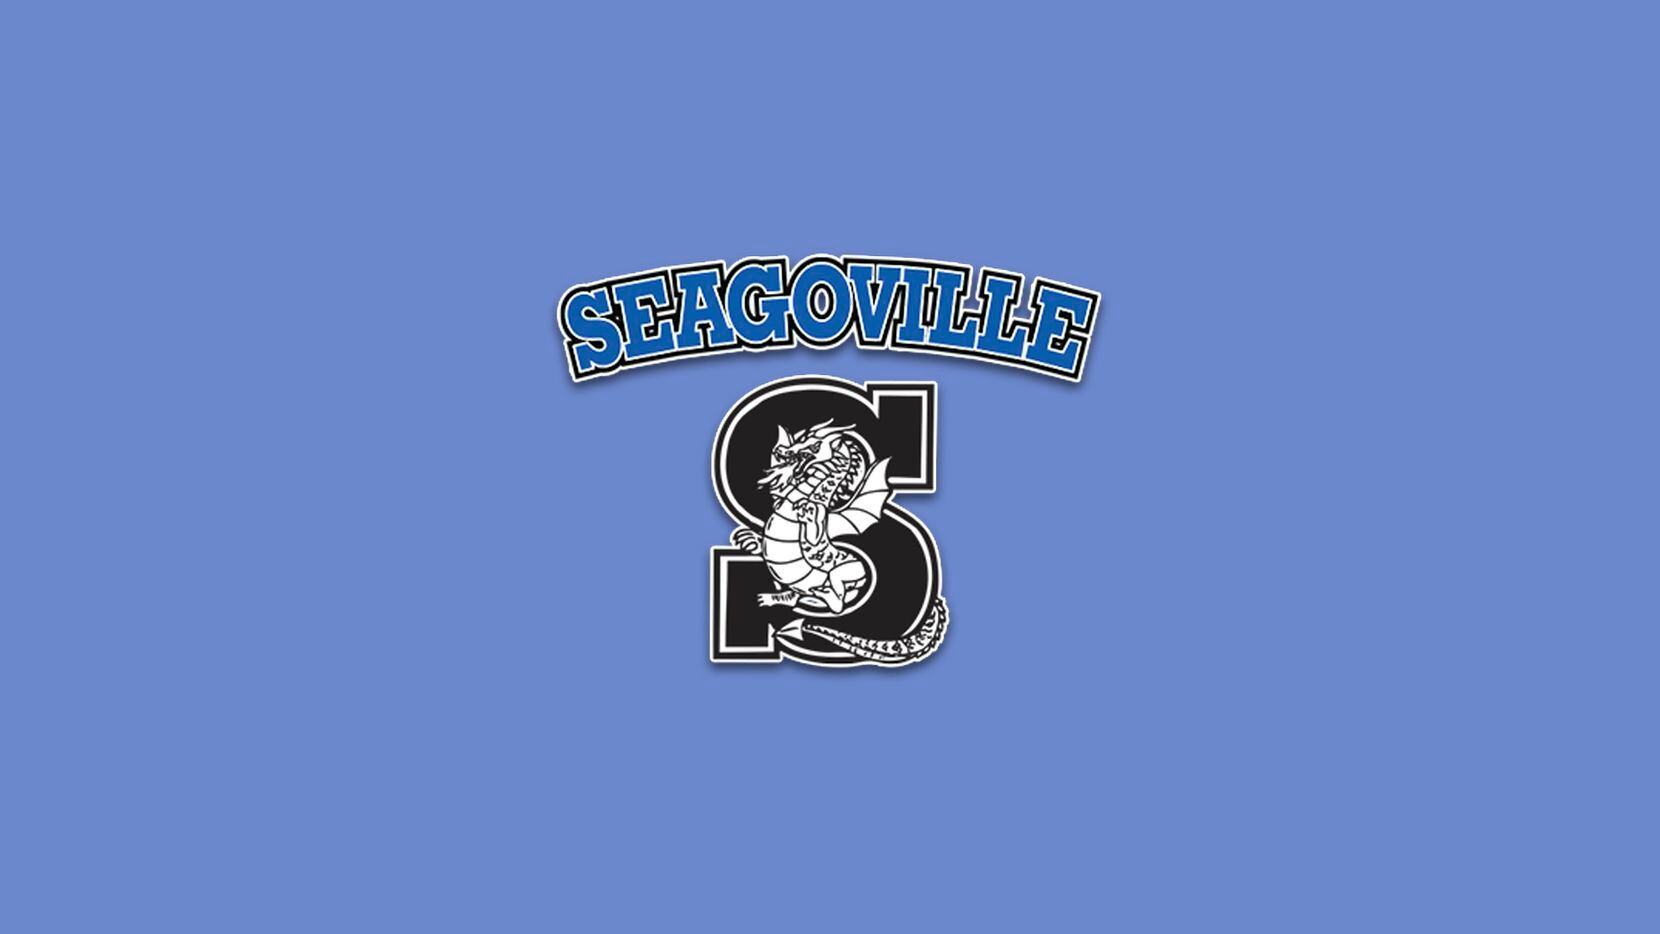 Seagoville HS